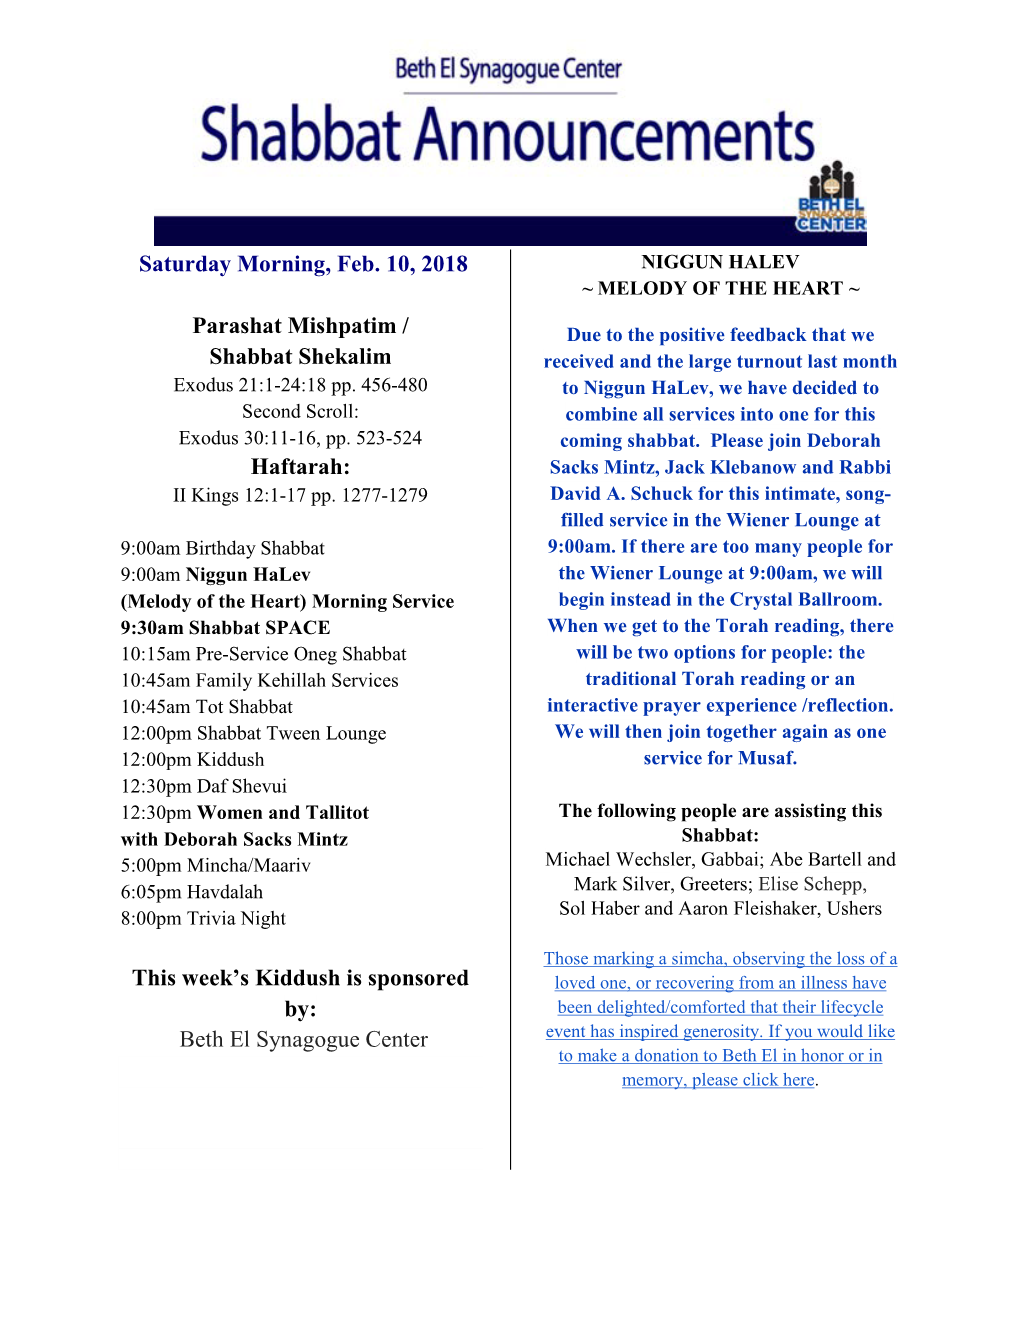 Saturday Morning, Feb. 10, 2018 Parashat Mishpatim / Shabbat Shekalim Haftarah: This Week's Kiddush Is Sponsored By: Beth El